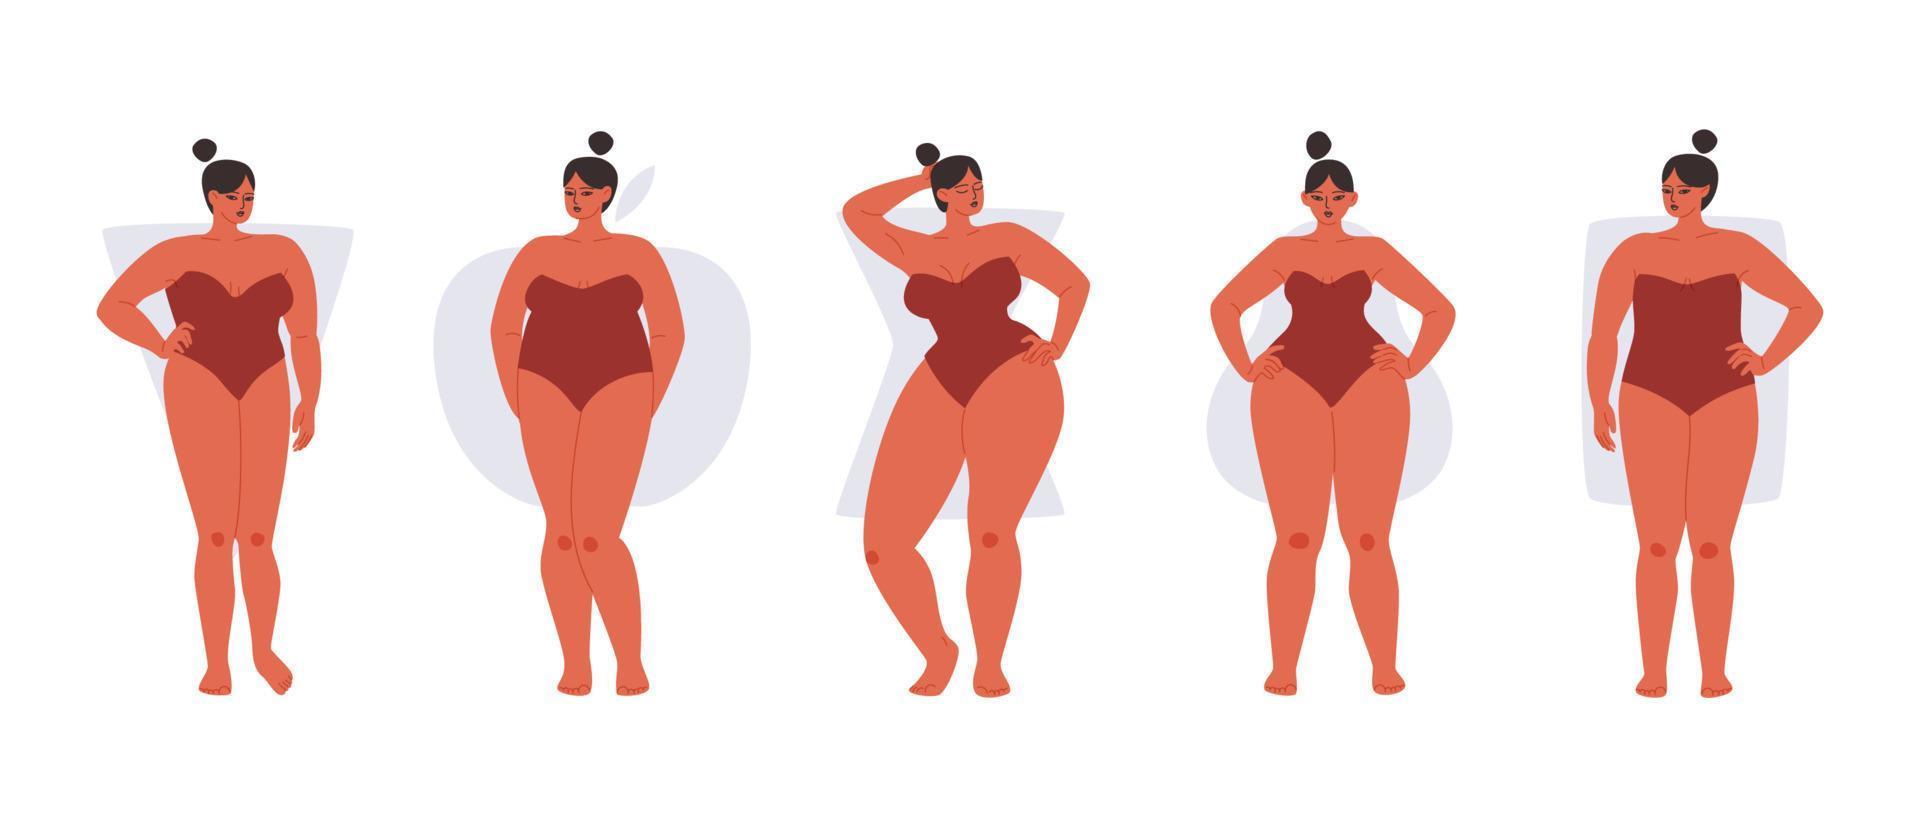 ensemble de types de corps féminins complets isolés. des femmes rondes en maillot de bain rouge montrent différentes formes de corps. illustration vectorielle de filles potelées sur fond blanc. vecteur